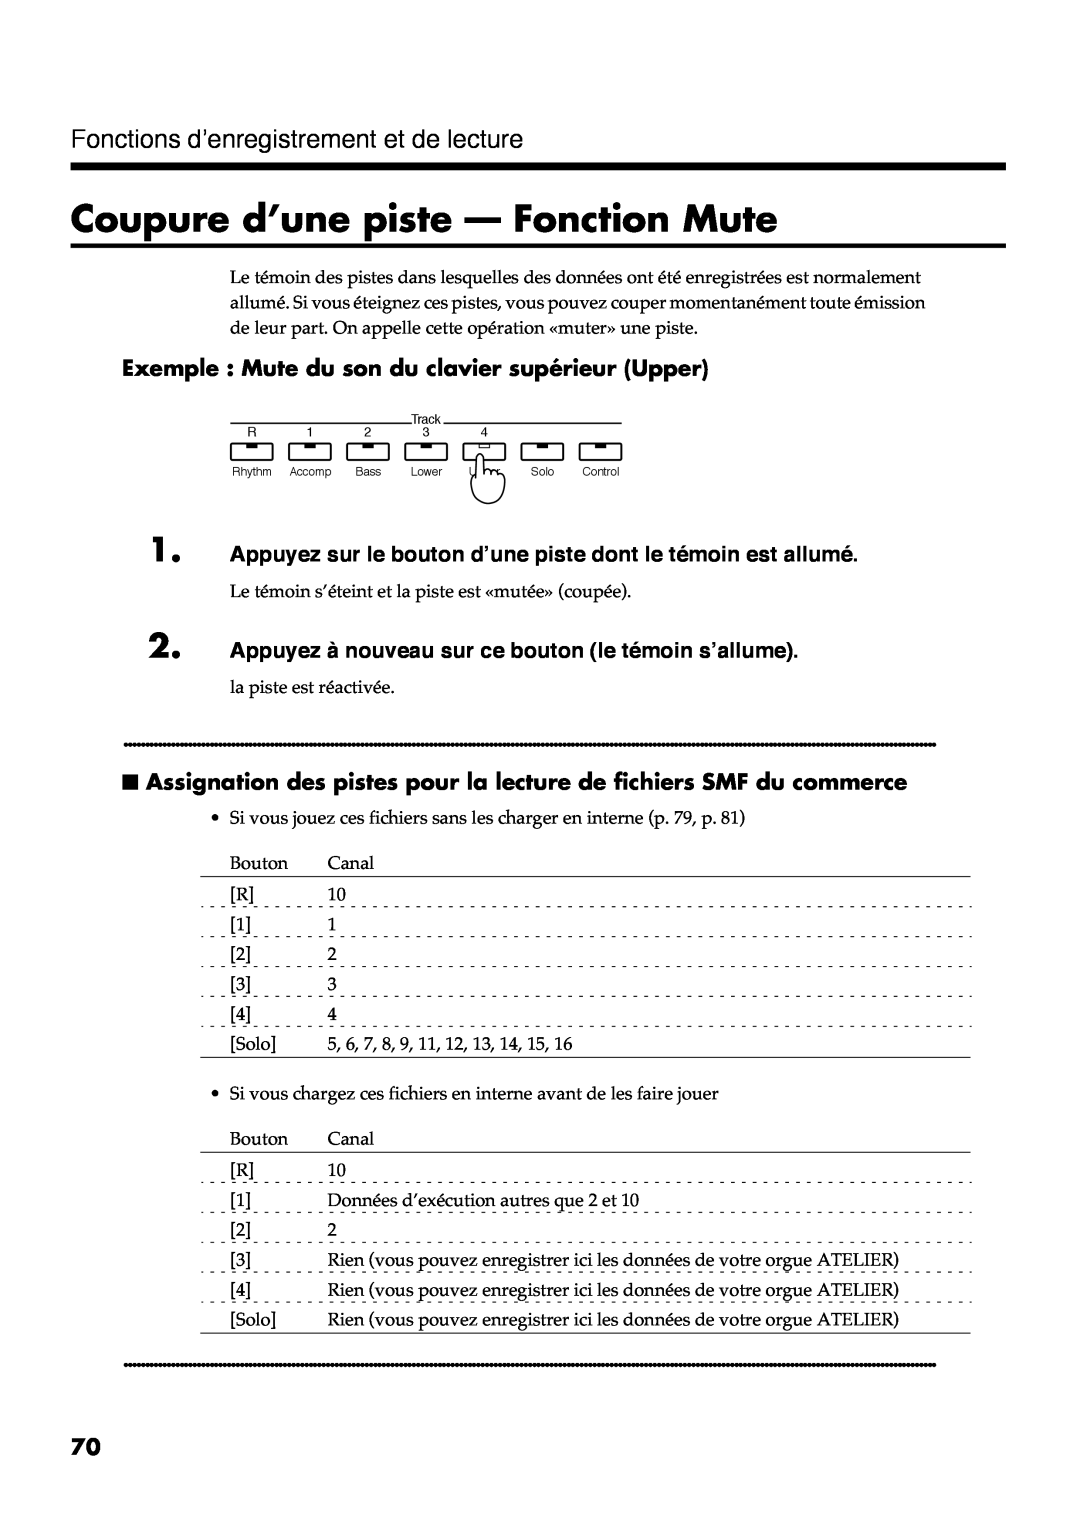 Roland AT30R manual Coupure d’une piste - Fonction Mute, Exemple Mute du son du clavier supérieur Upper 